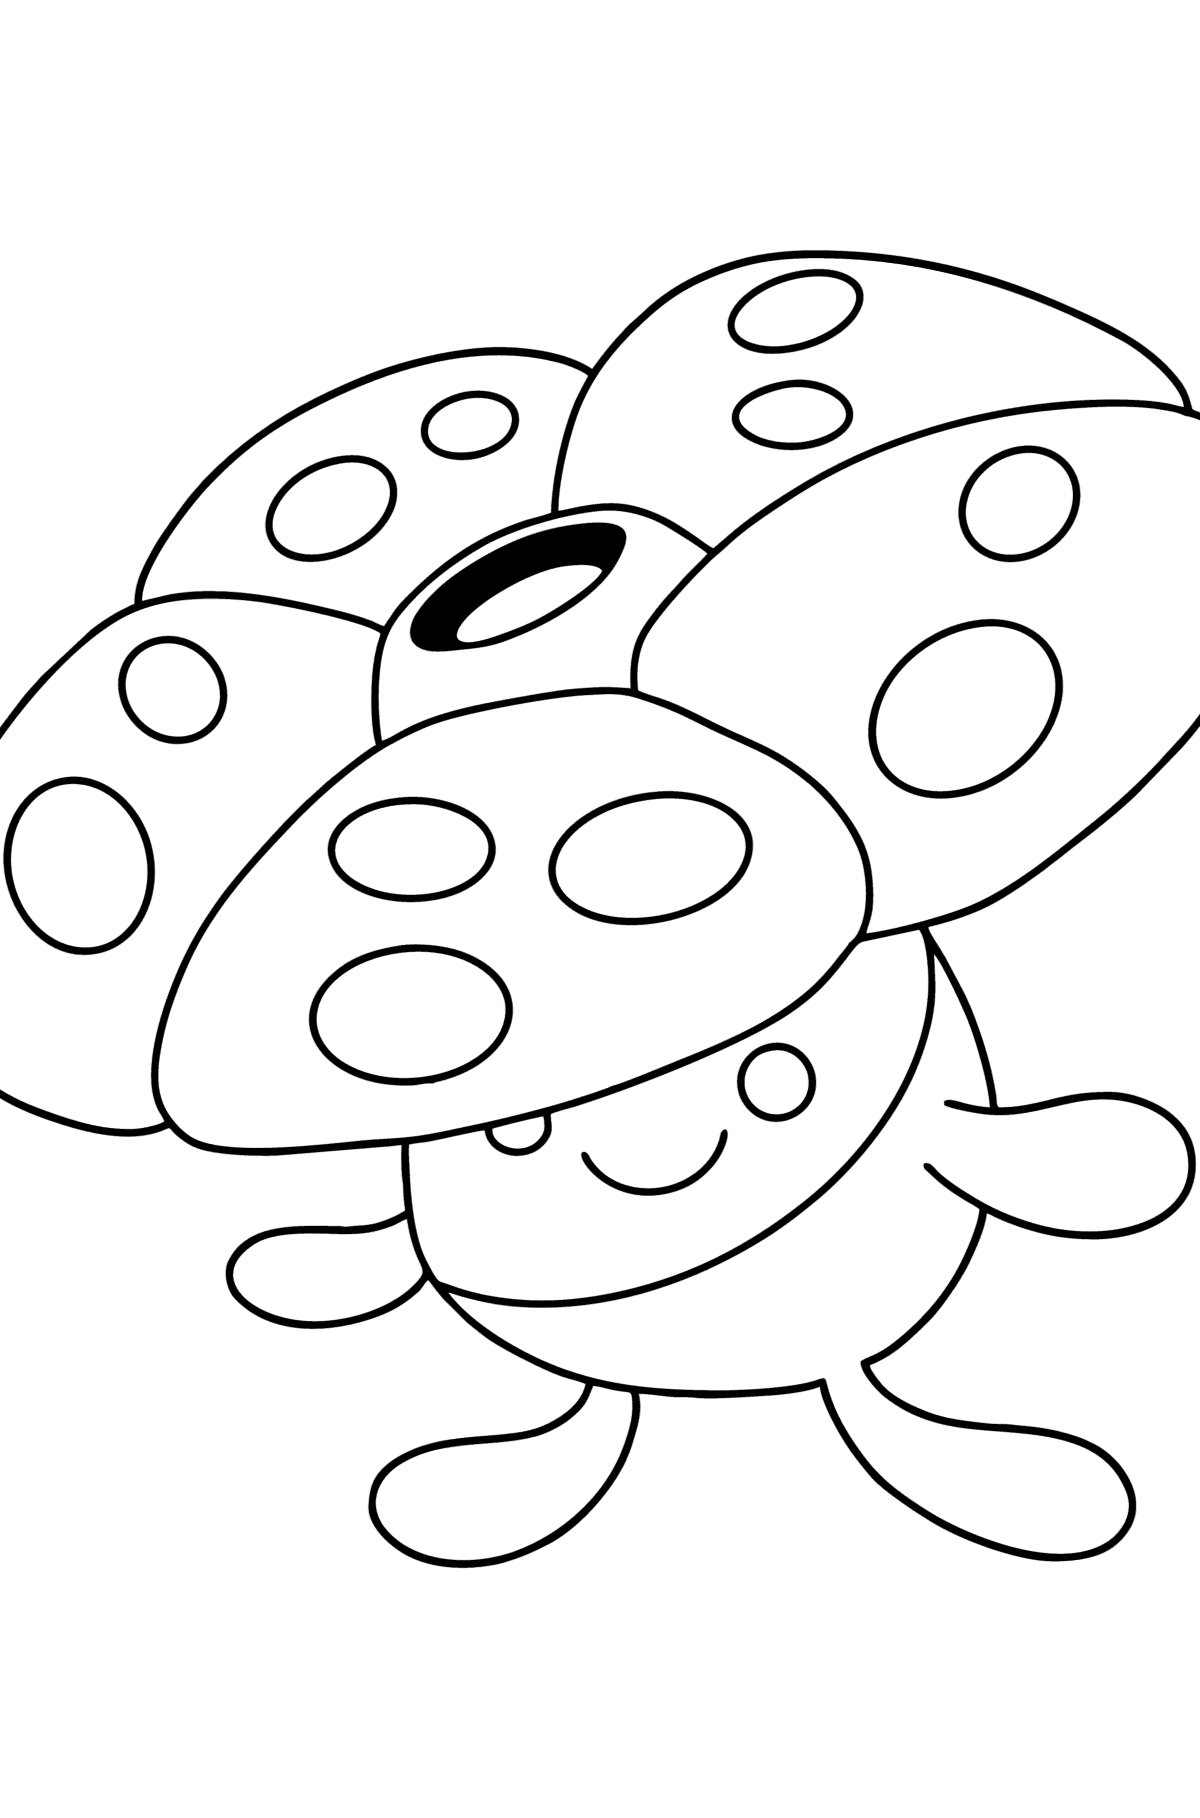 Раскраска Покемон (Pokemon Go) Vileplume - Картинки для Детей